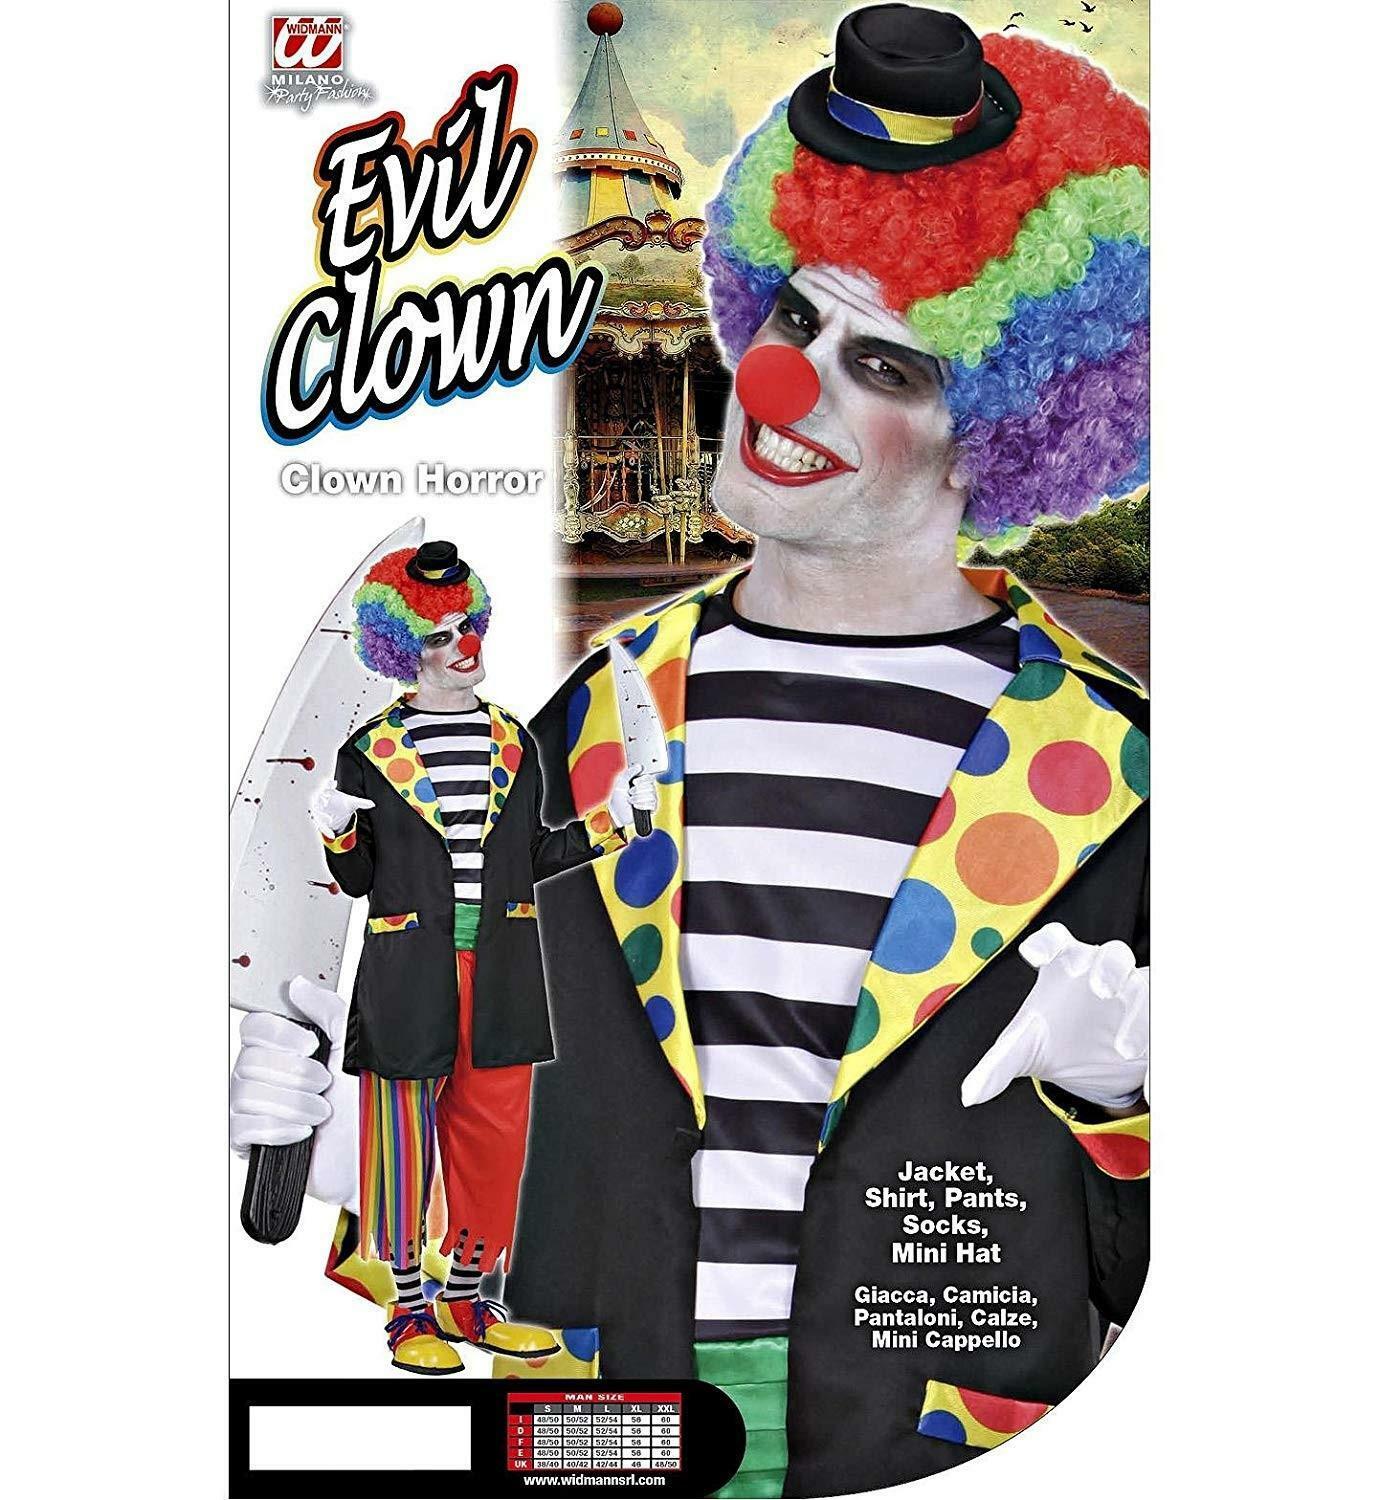 widmann widmann costume clown horror taglia m